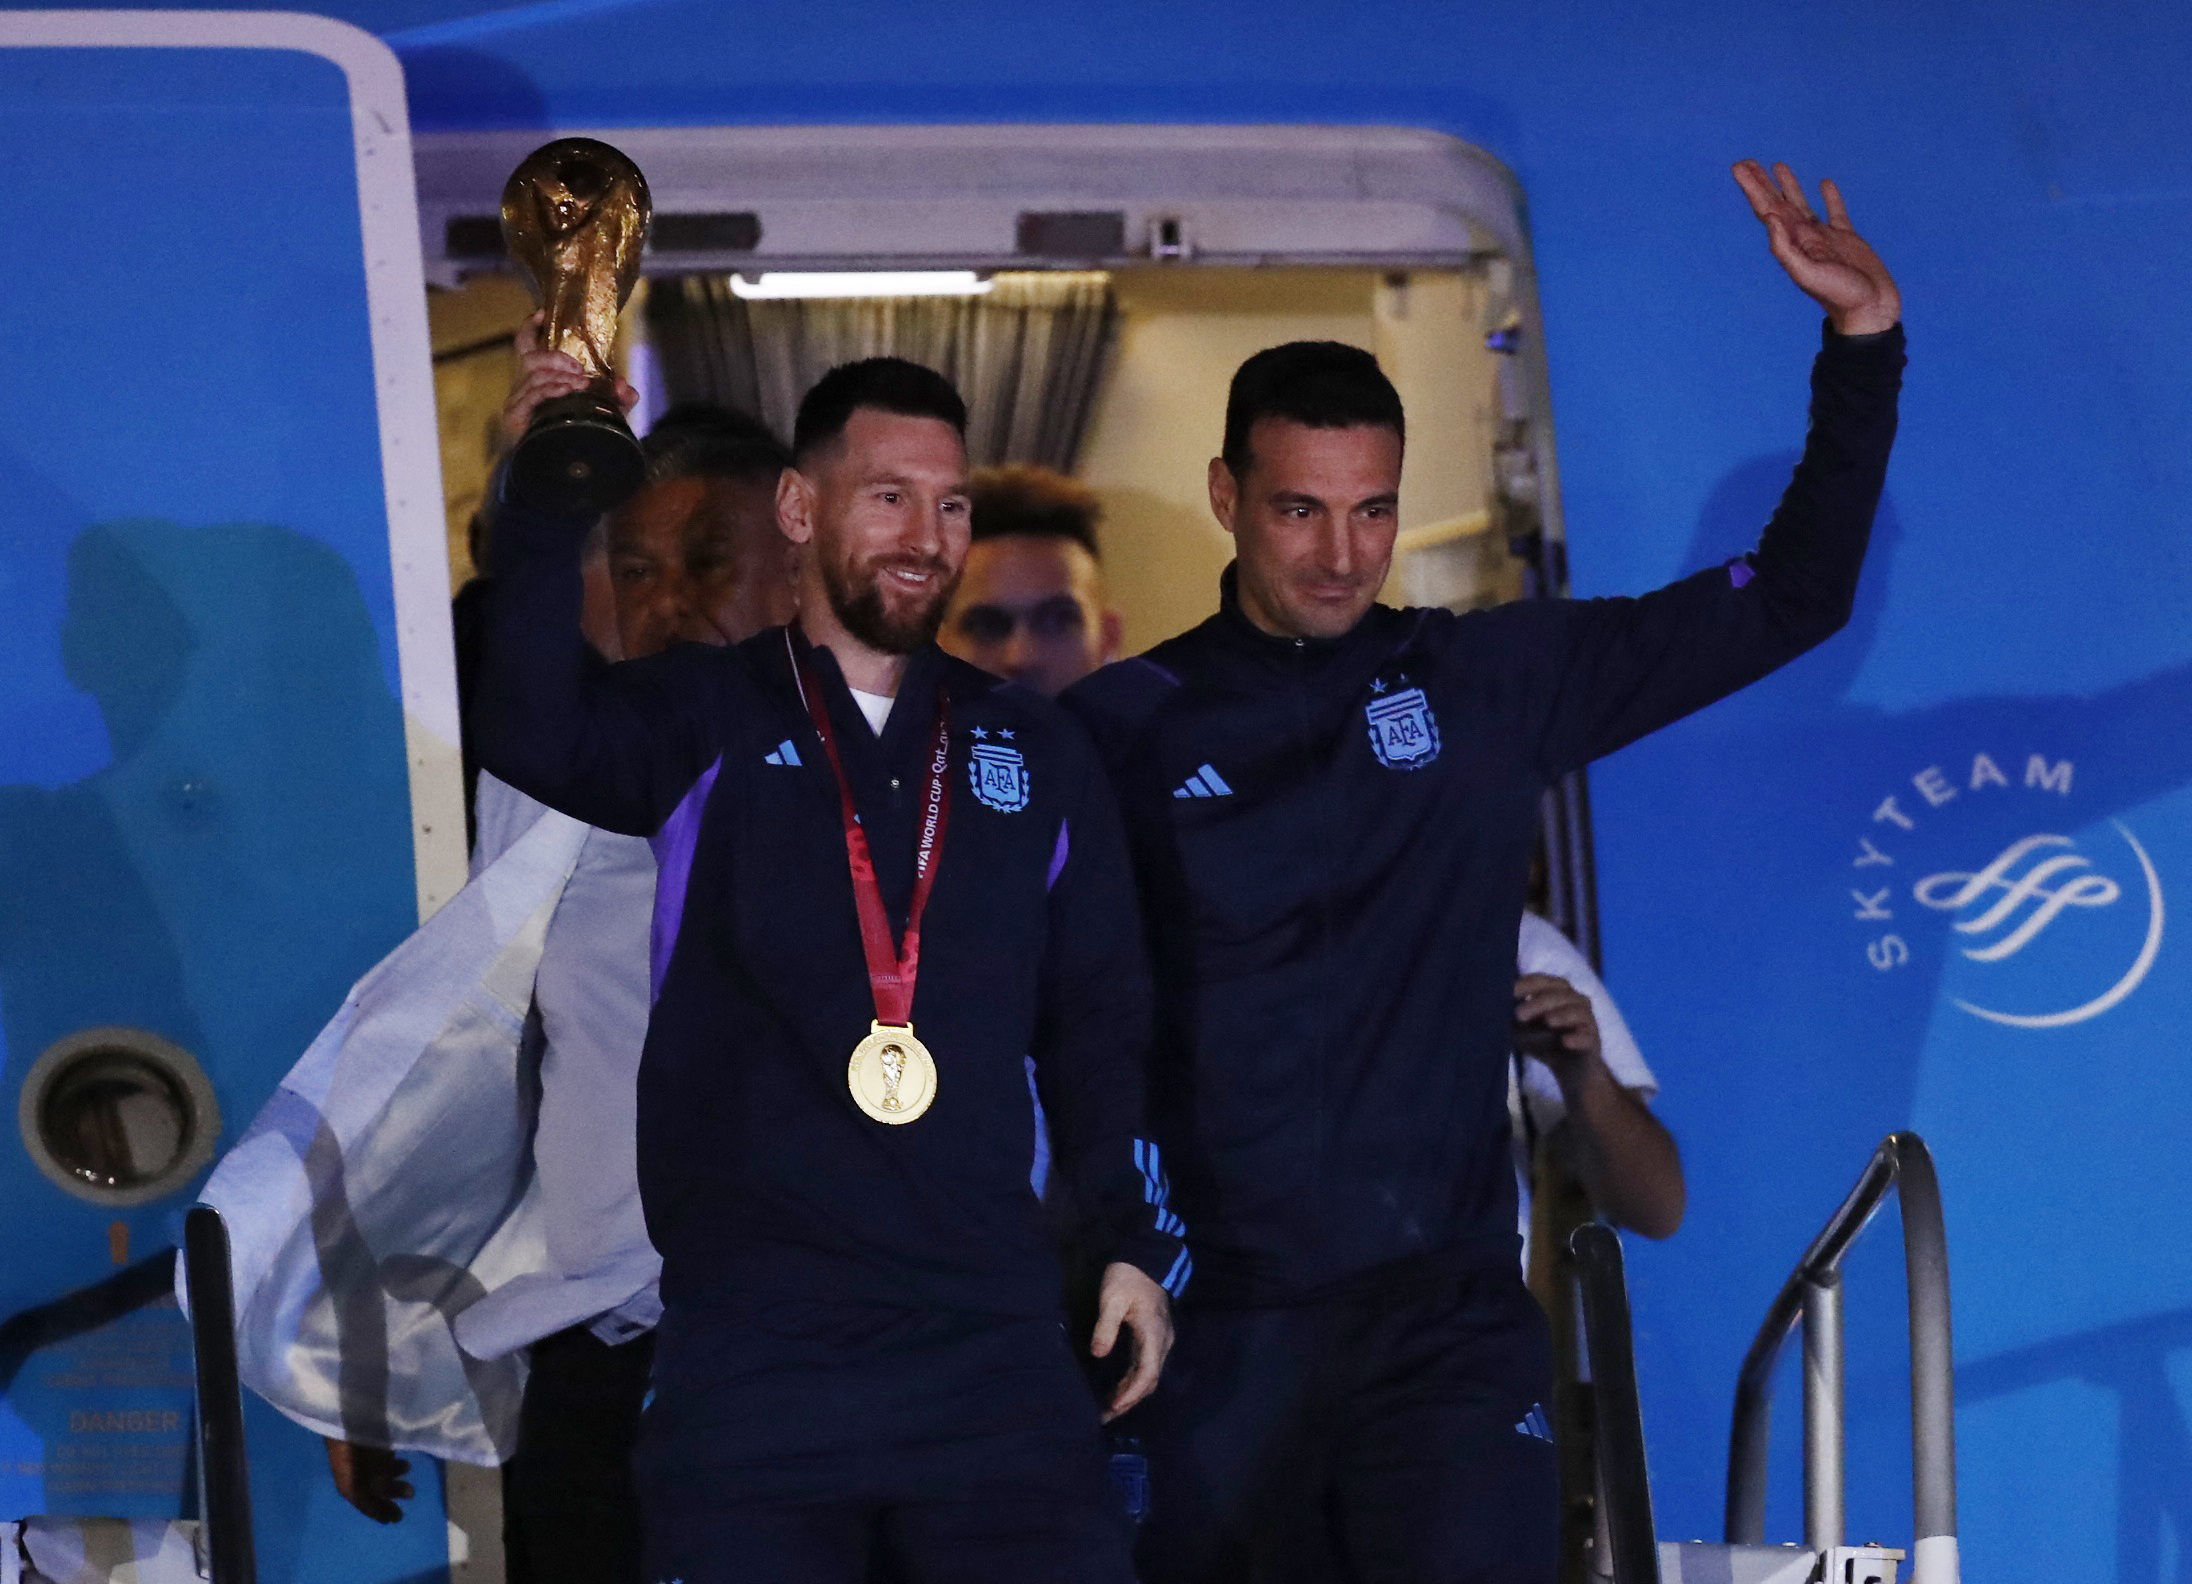 Football football - l'équipe argentine arrive à Buenos Aires après avoir remporté la coupe du monde - Buenos Aires, Argentine - 20 décembre 2022 l'entraîneur argentin Leonel Scaloni et Lionel Messi avec le trophée alors que l'équipe arrive à l'aéroport international d'Ezeiza REUTERS/Agustin Marcarian